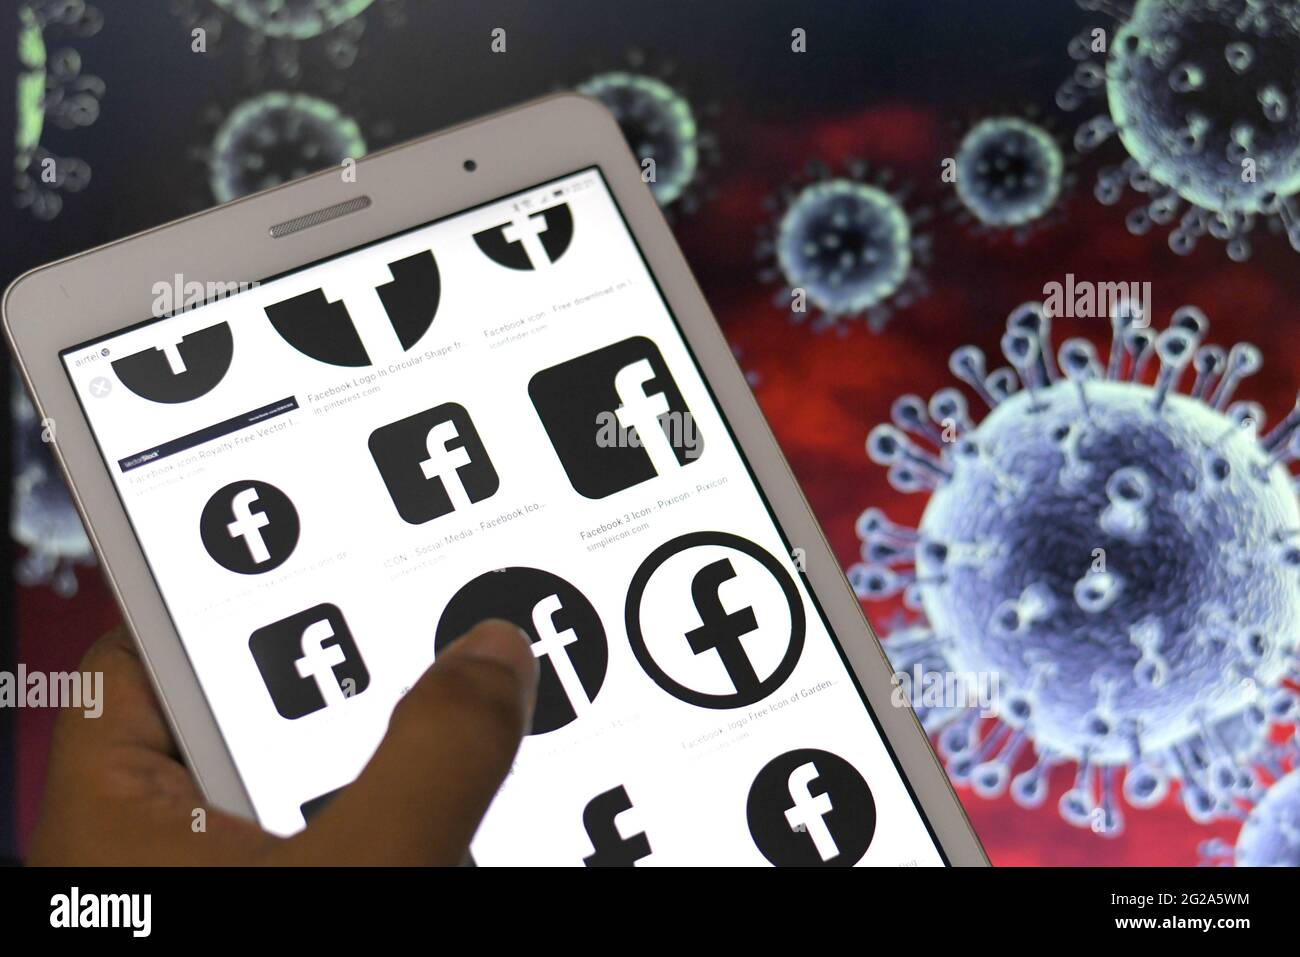 In questa illustrazione fotografica, i logo di Facebook visualizzati su un telefono Android Tablet con i simboli dei virus Corona sullo sfondo. Foto Stock